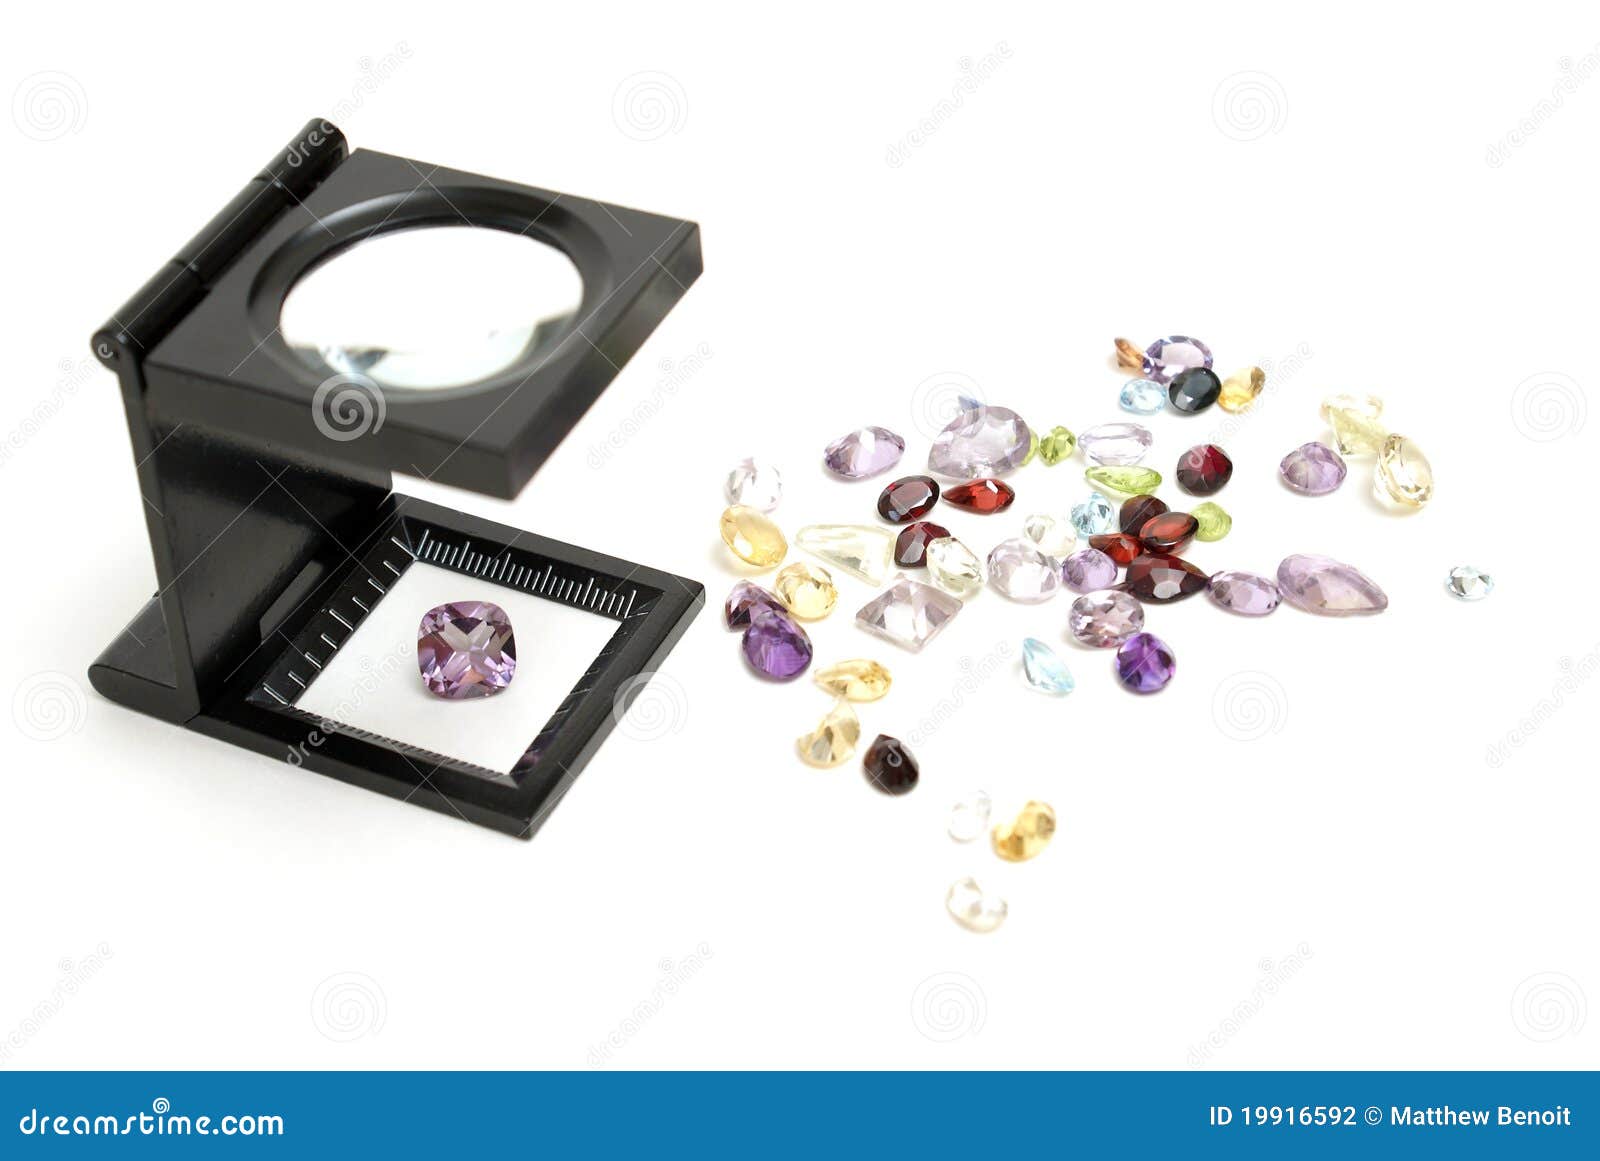 appraisal of gemstones